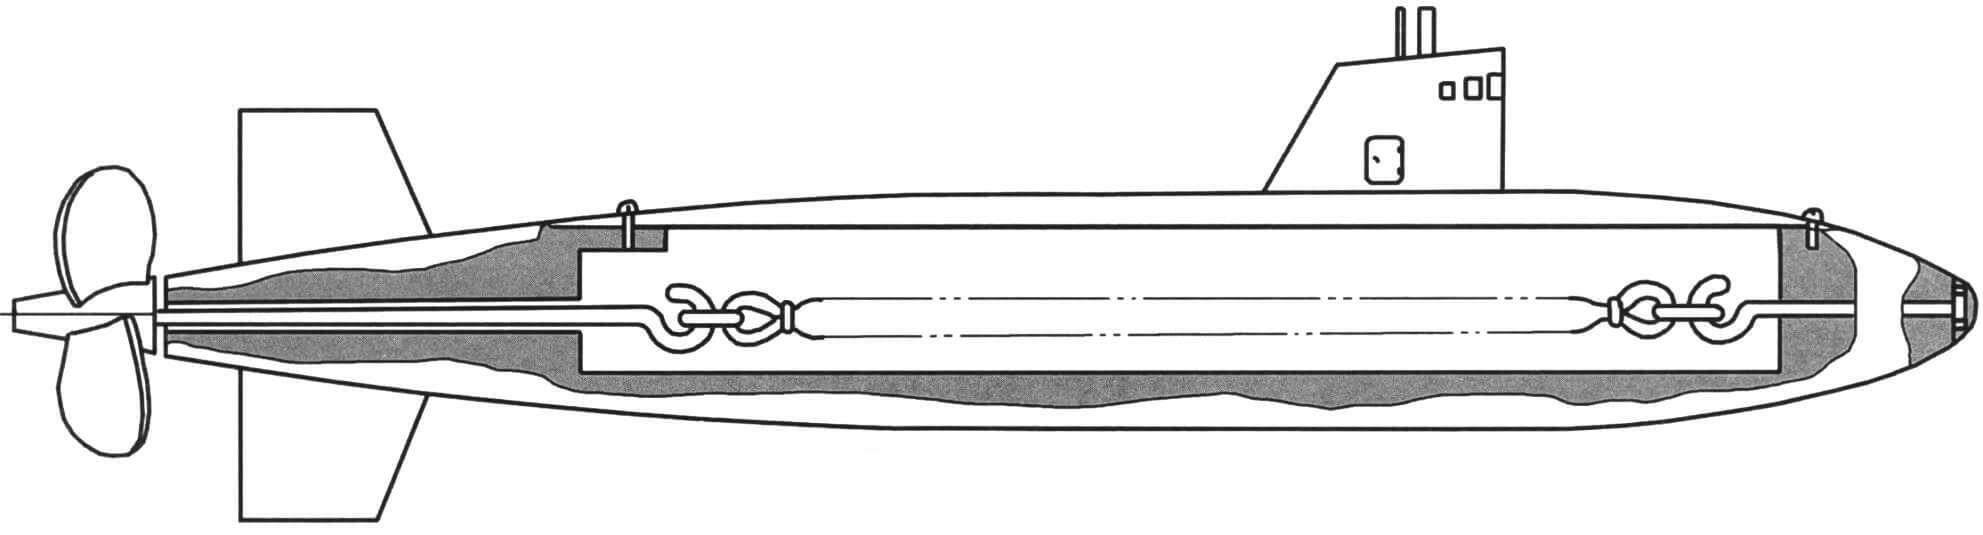 Модель подводной лодки длиной до 500 мм с резиномотором